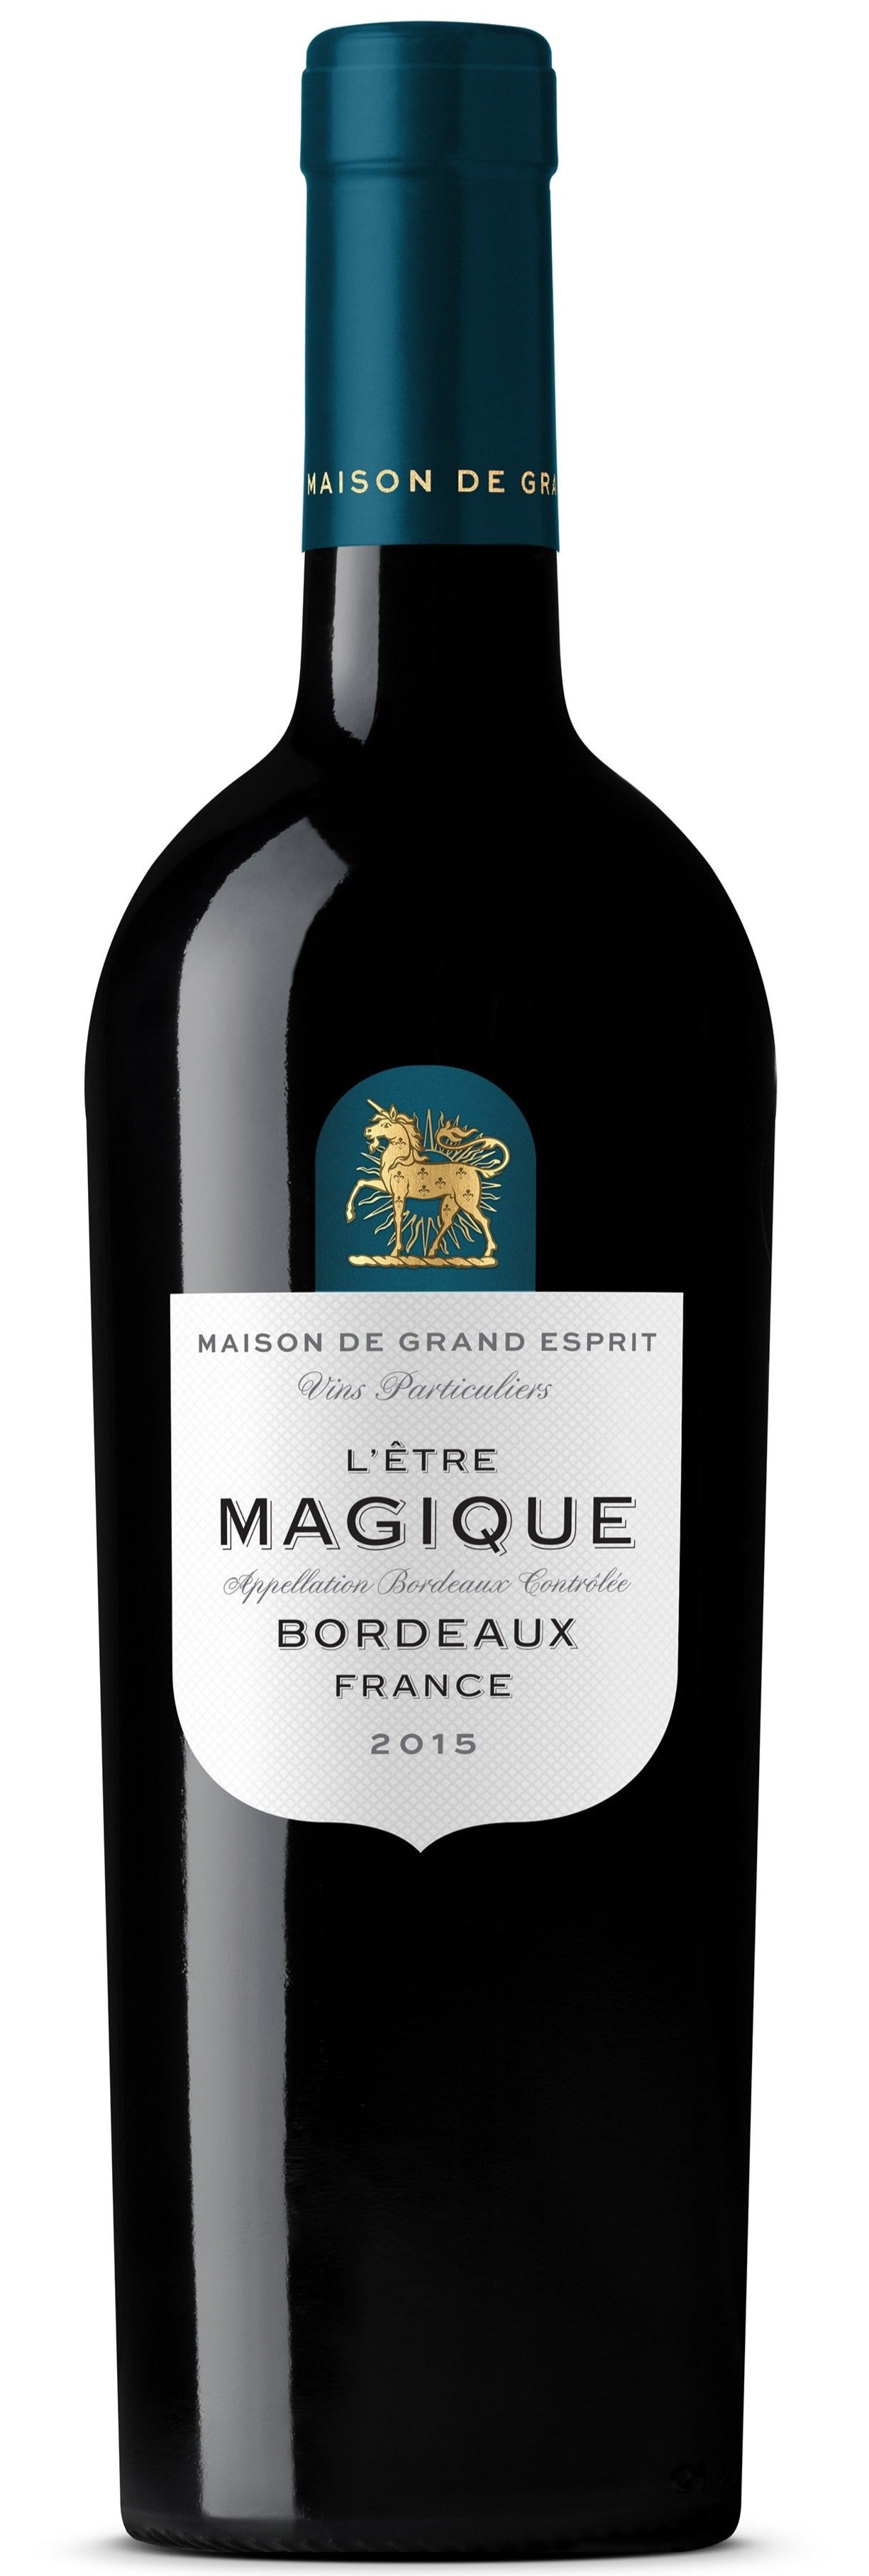 MDGE L'etre Magique Bordeaux Rouge